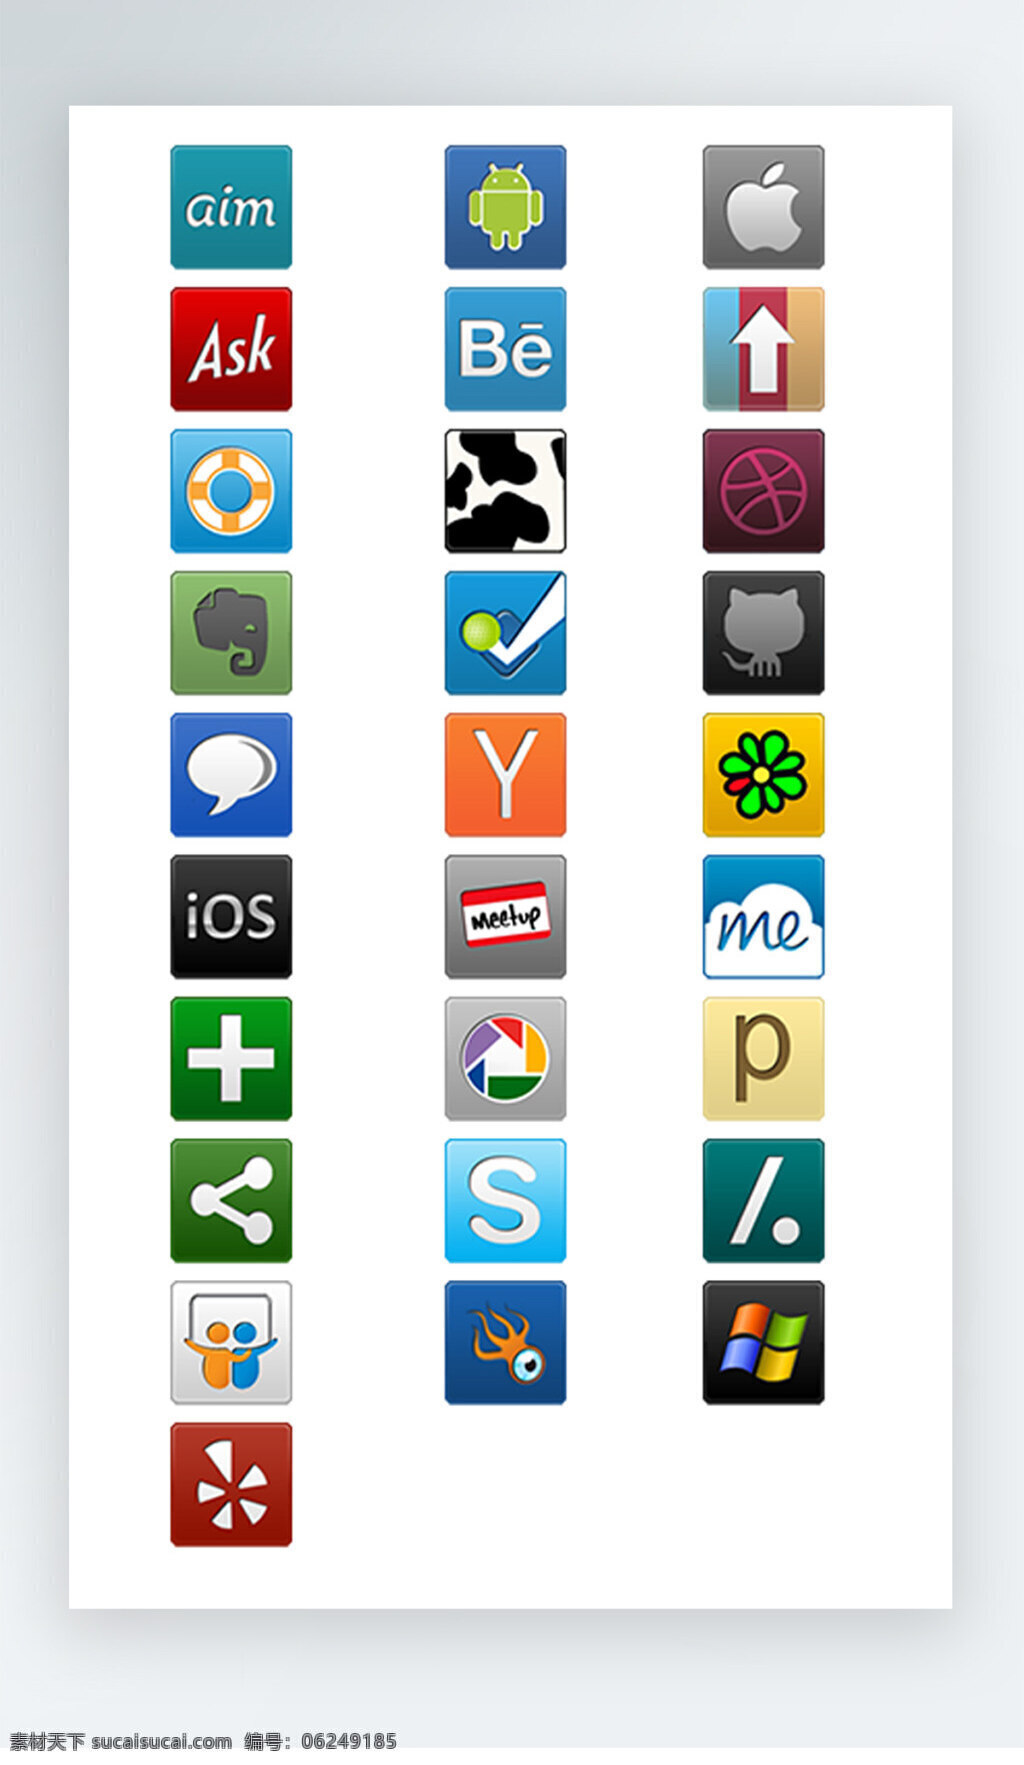 浏览器 按钮 图标 彩色 写实 icon 彩色写实图标 p s 安卓图标 分享图标